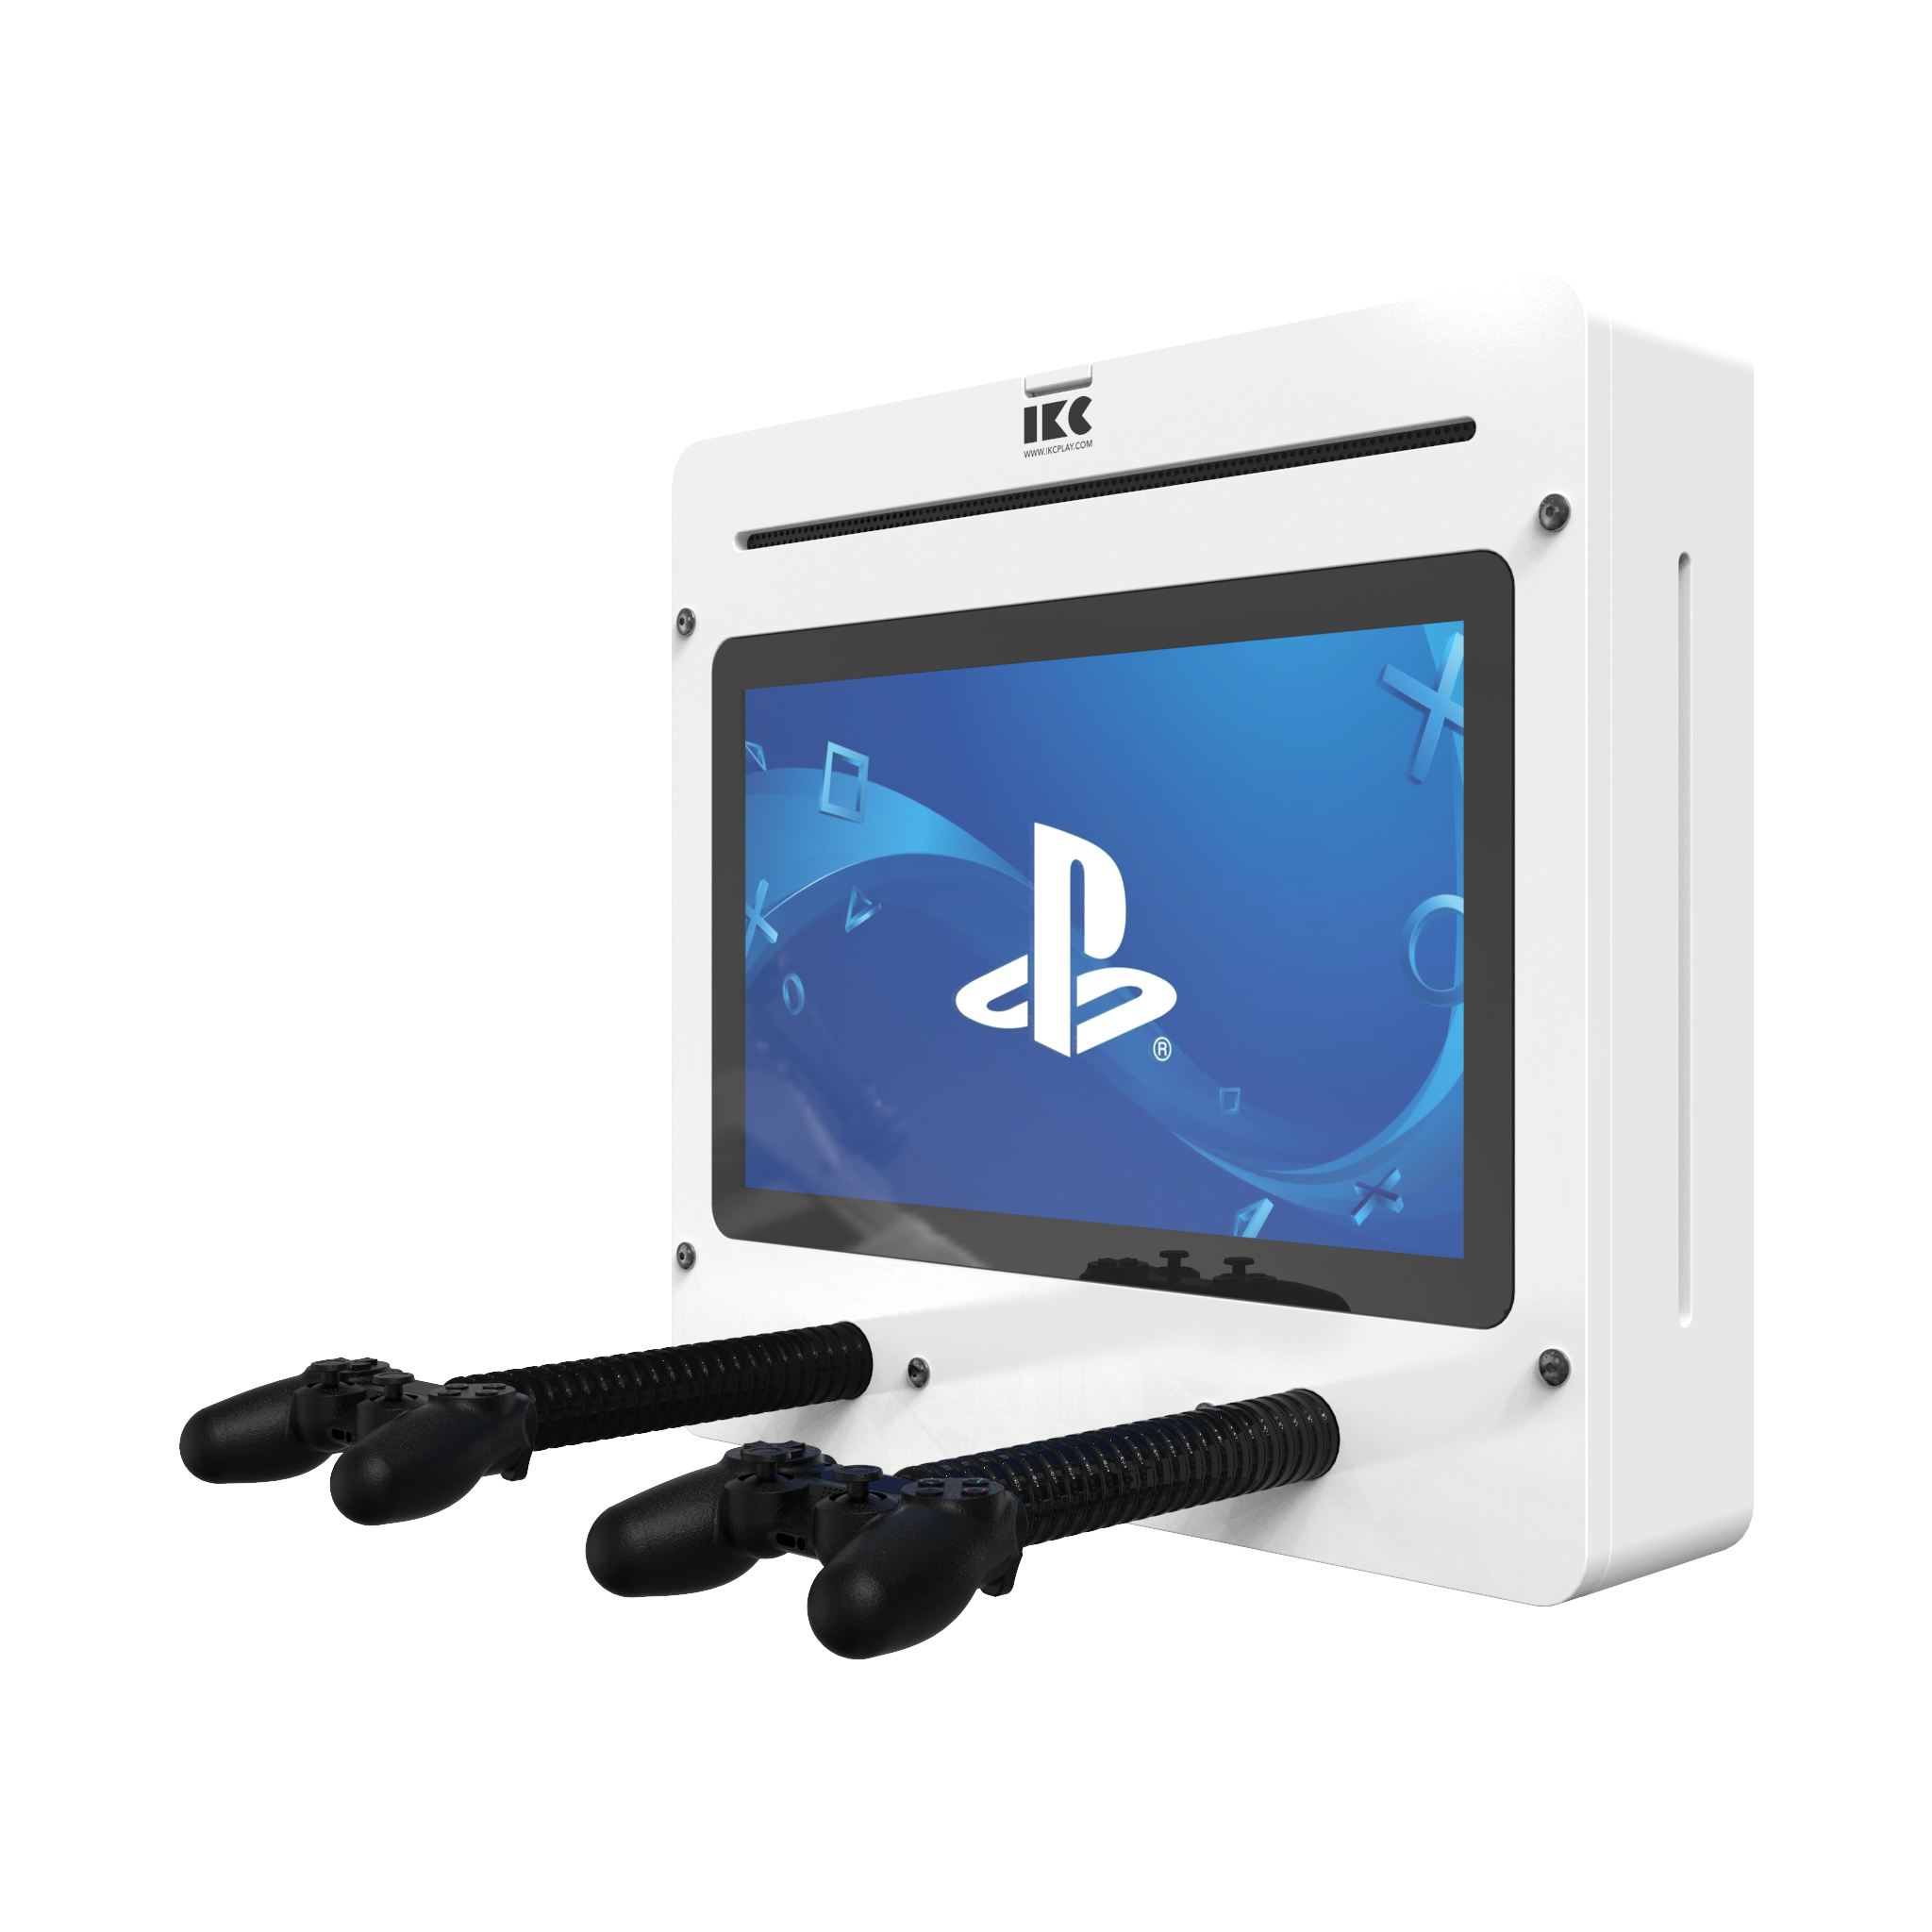 Quest'imagine mostra sistema di gioco interattivi Delta 21 inch Playstation